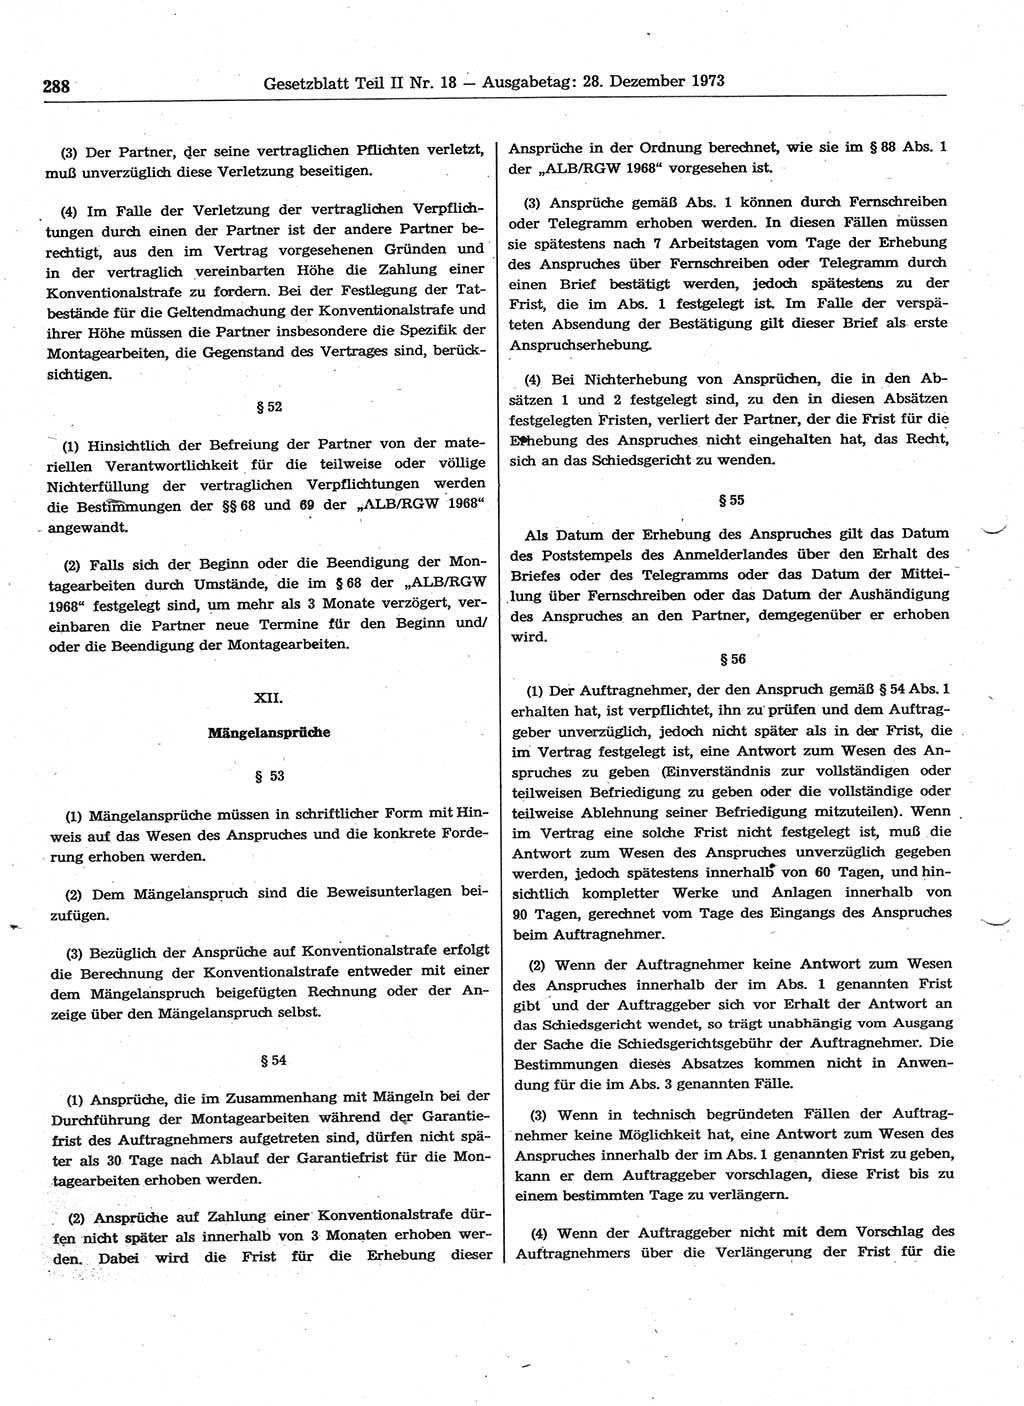 Gesetzblatt (GBl.) der Deutschen Demokratischen Republik (DDR) Teil ⅠⅠ 1973, Seite 288 (GBl. DDR ⅠⅠ 1973, S. 288)